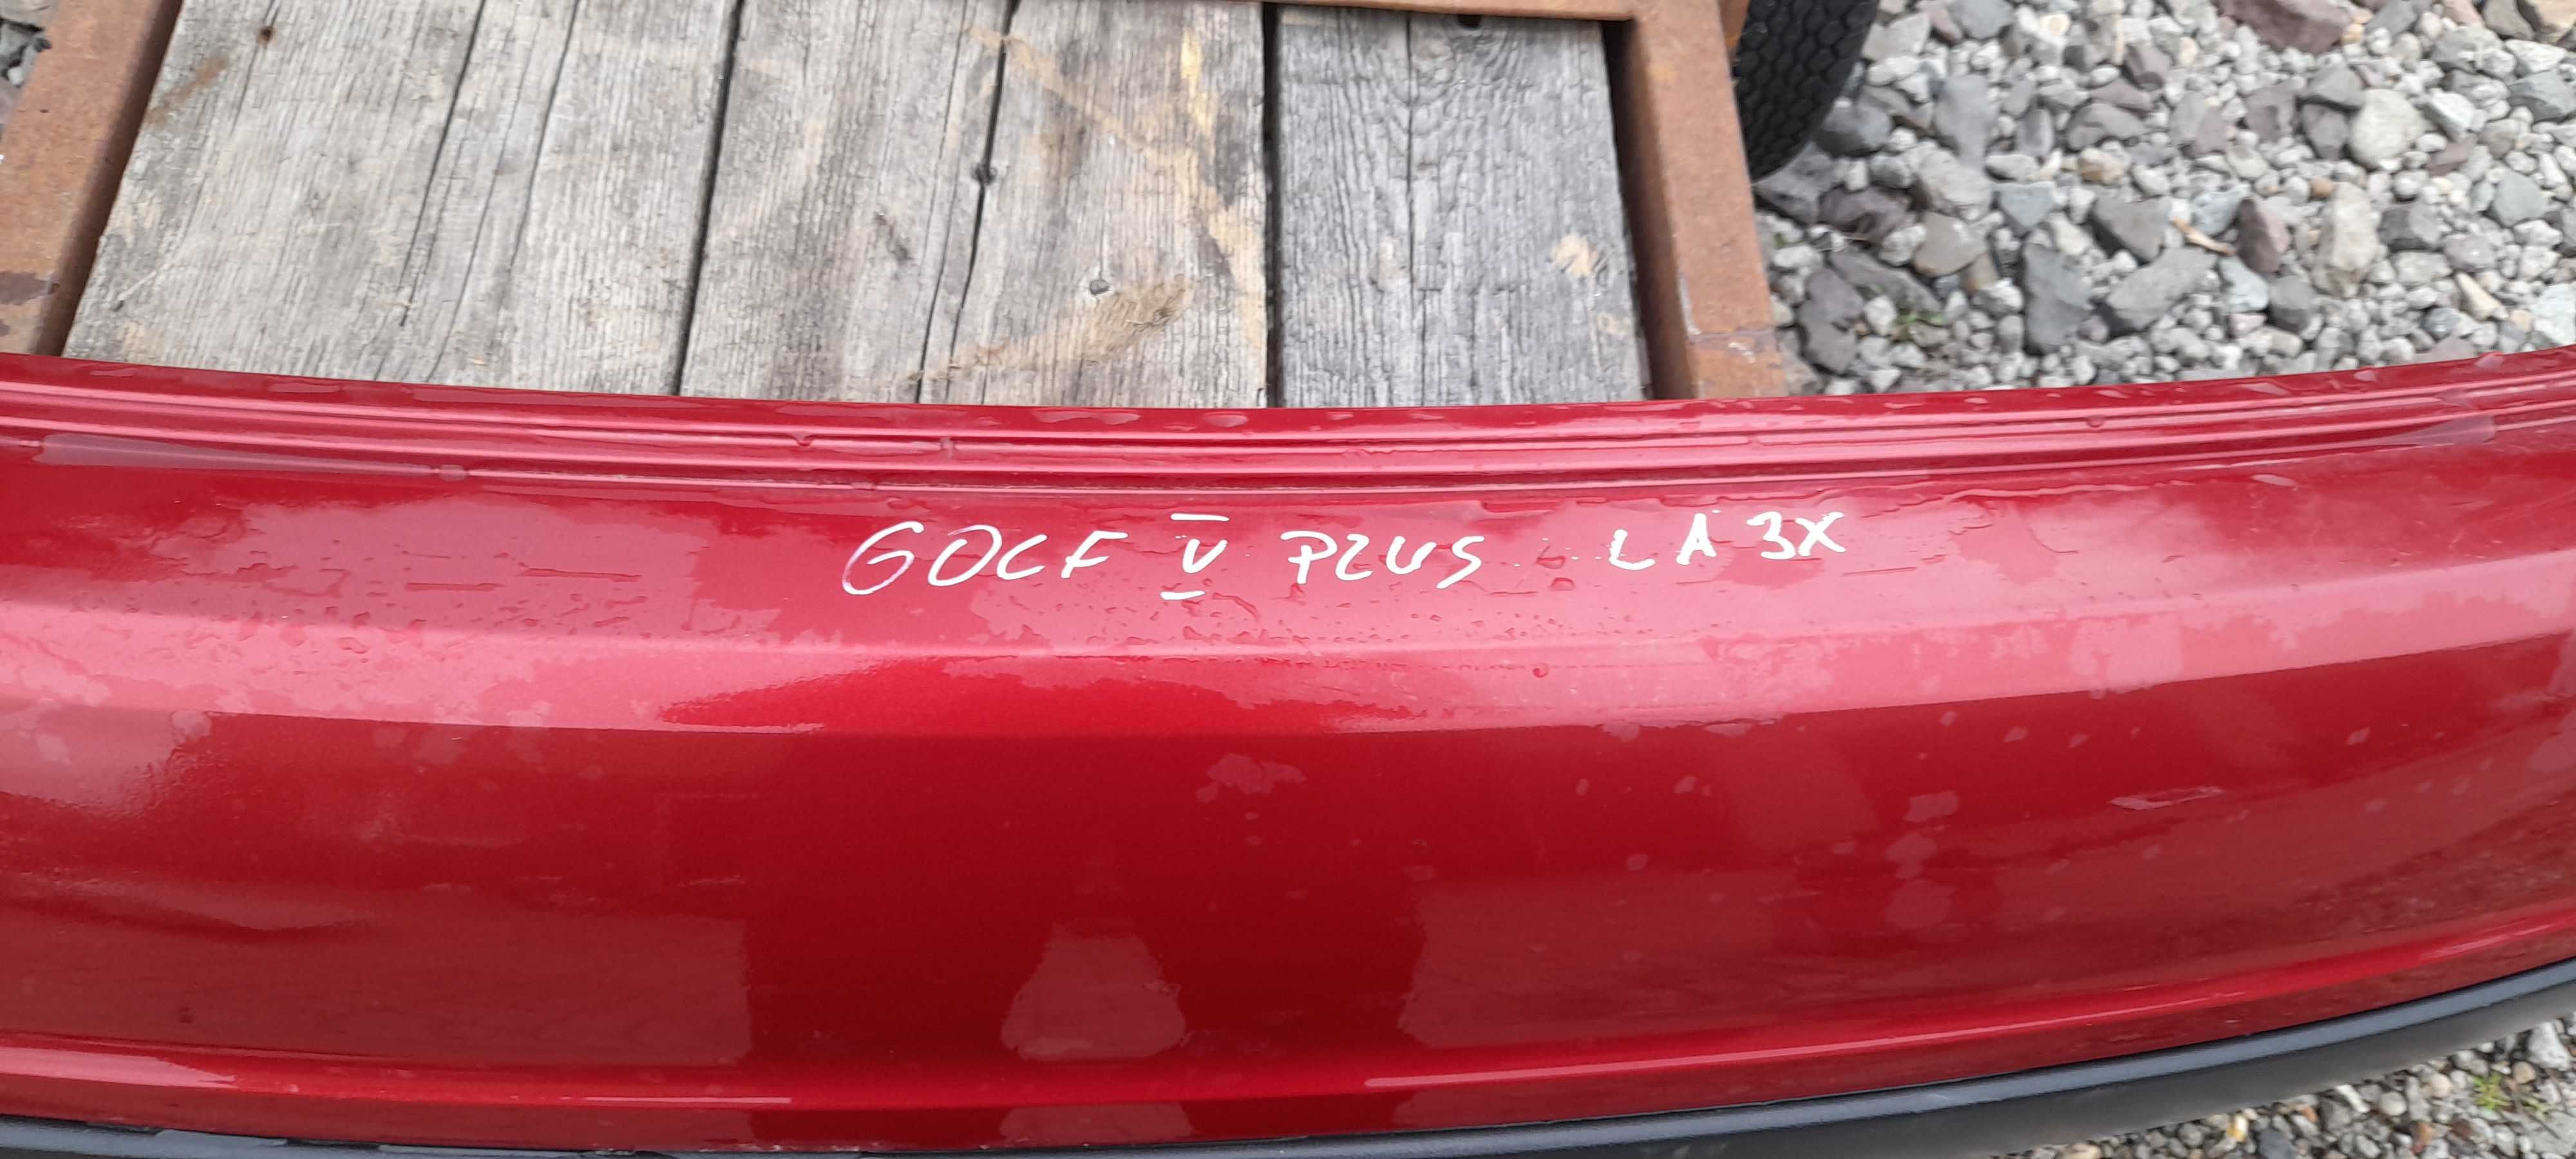 VW GOLF 5 PLUS zderzak tył kolor  LA3X